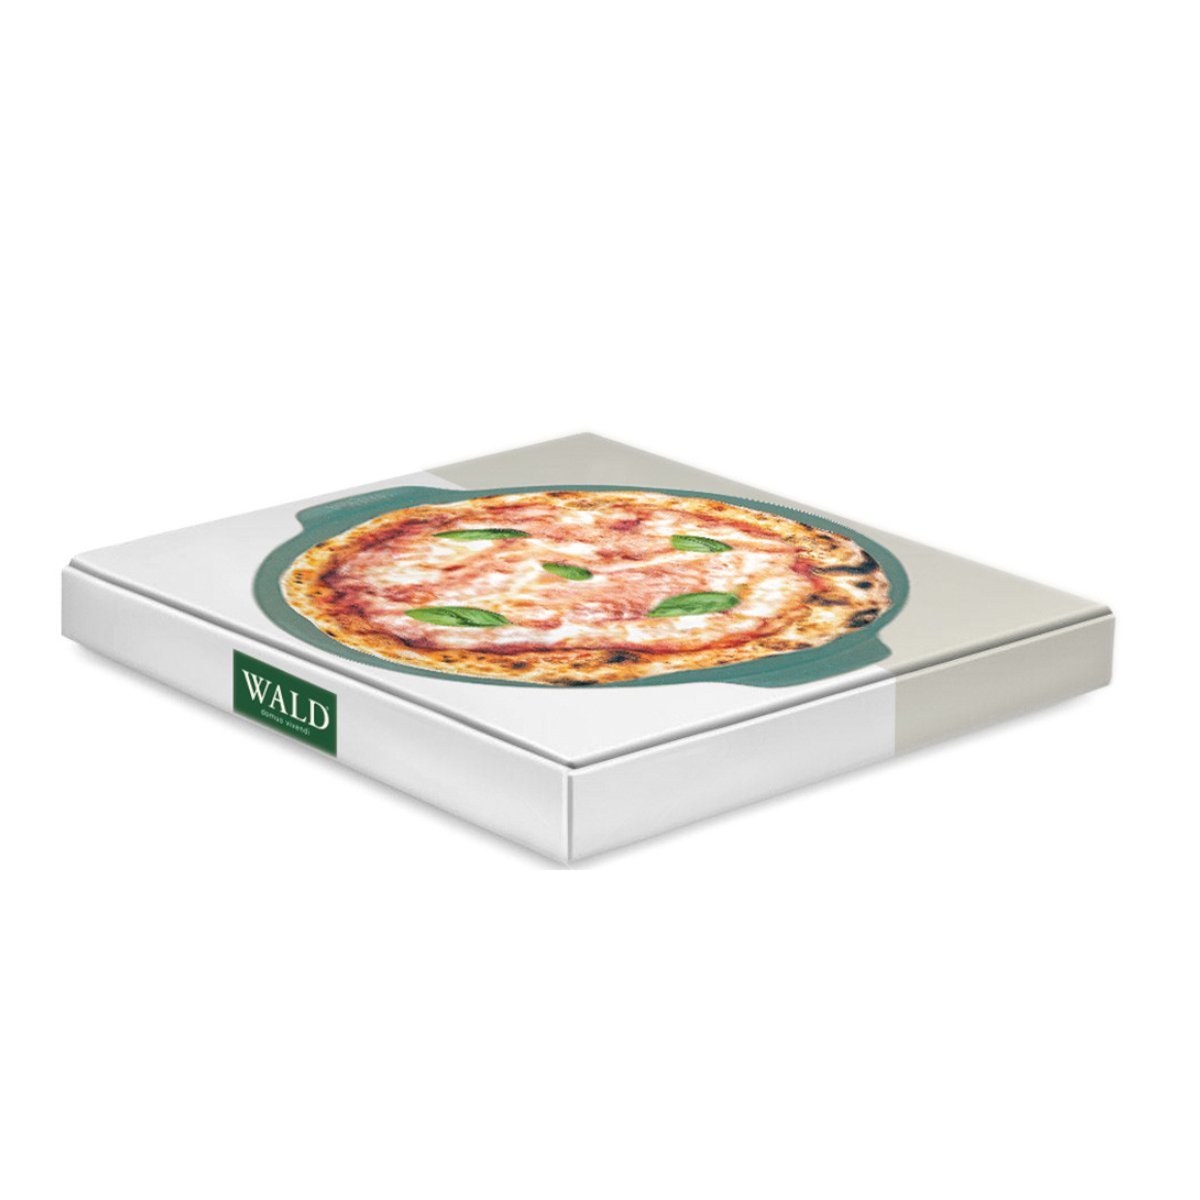 und 34 dunkelgrau, durchgebrannt Pizzastein Ton, cm, WALD glasiert Pizzaplatte anthrazit